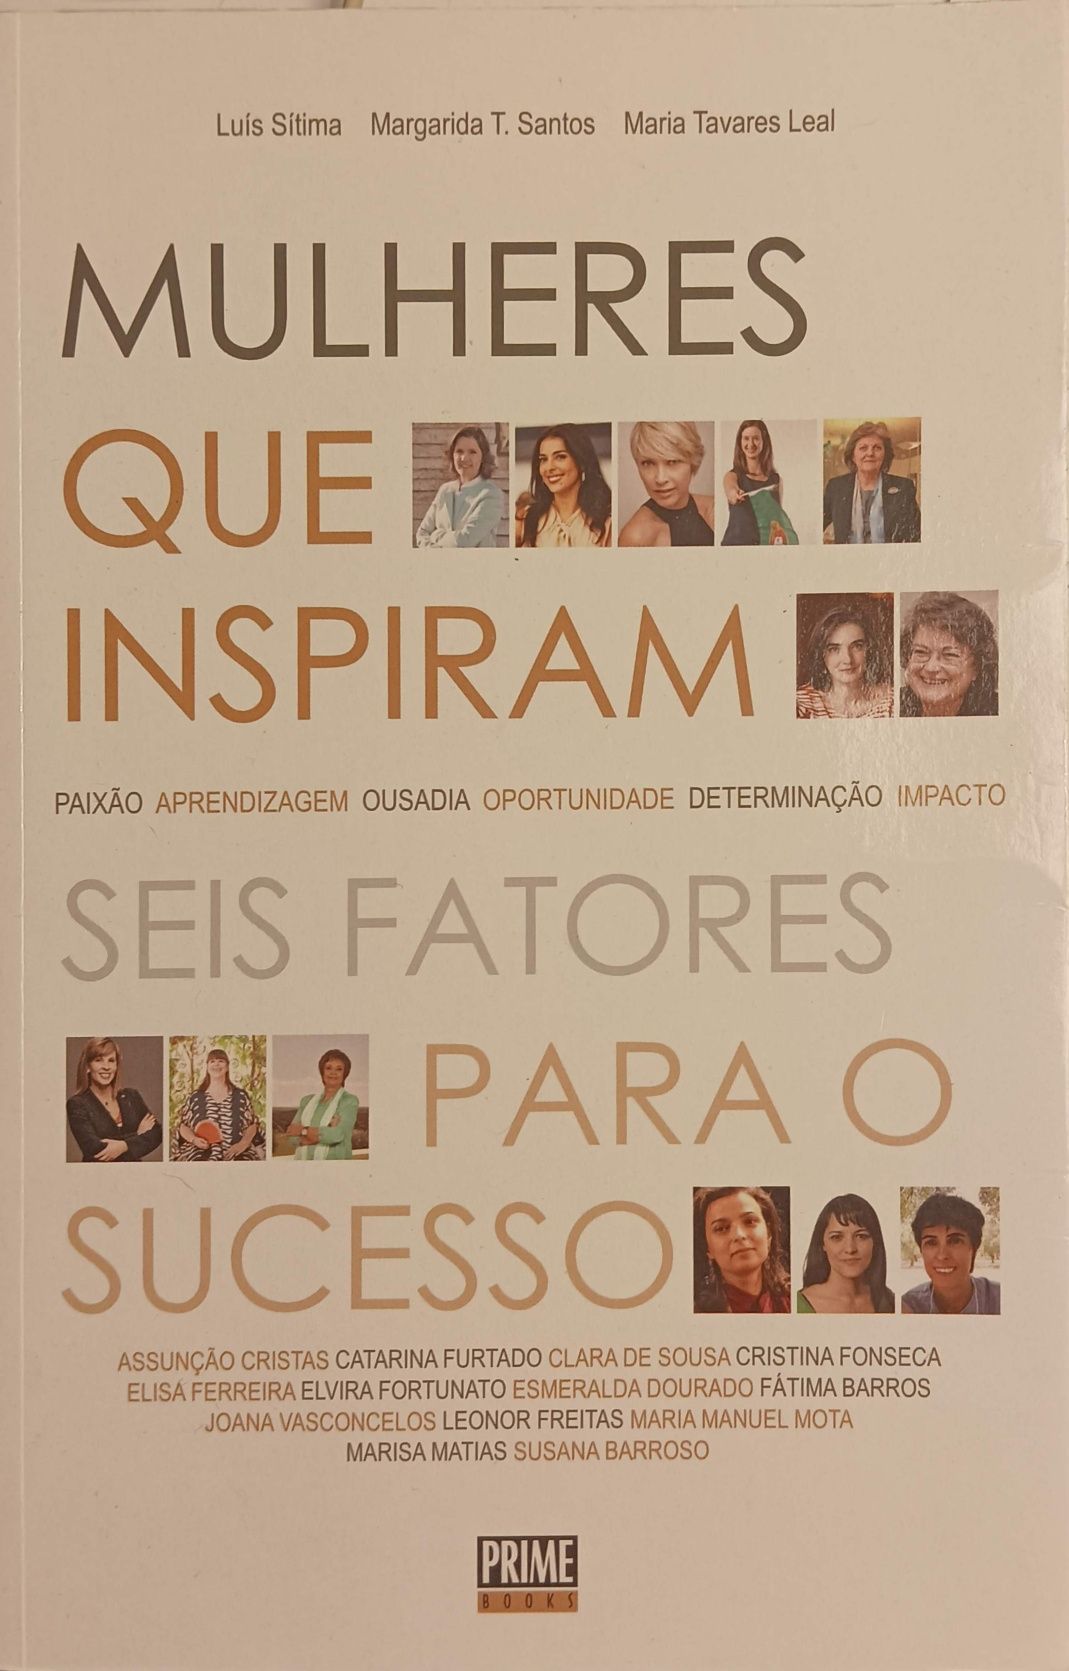 "Mulheres que Inspiram. Seis fatores para o sucesso"